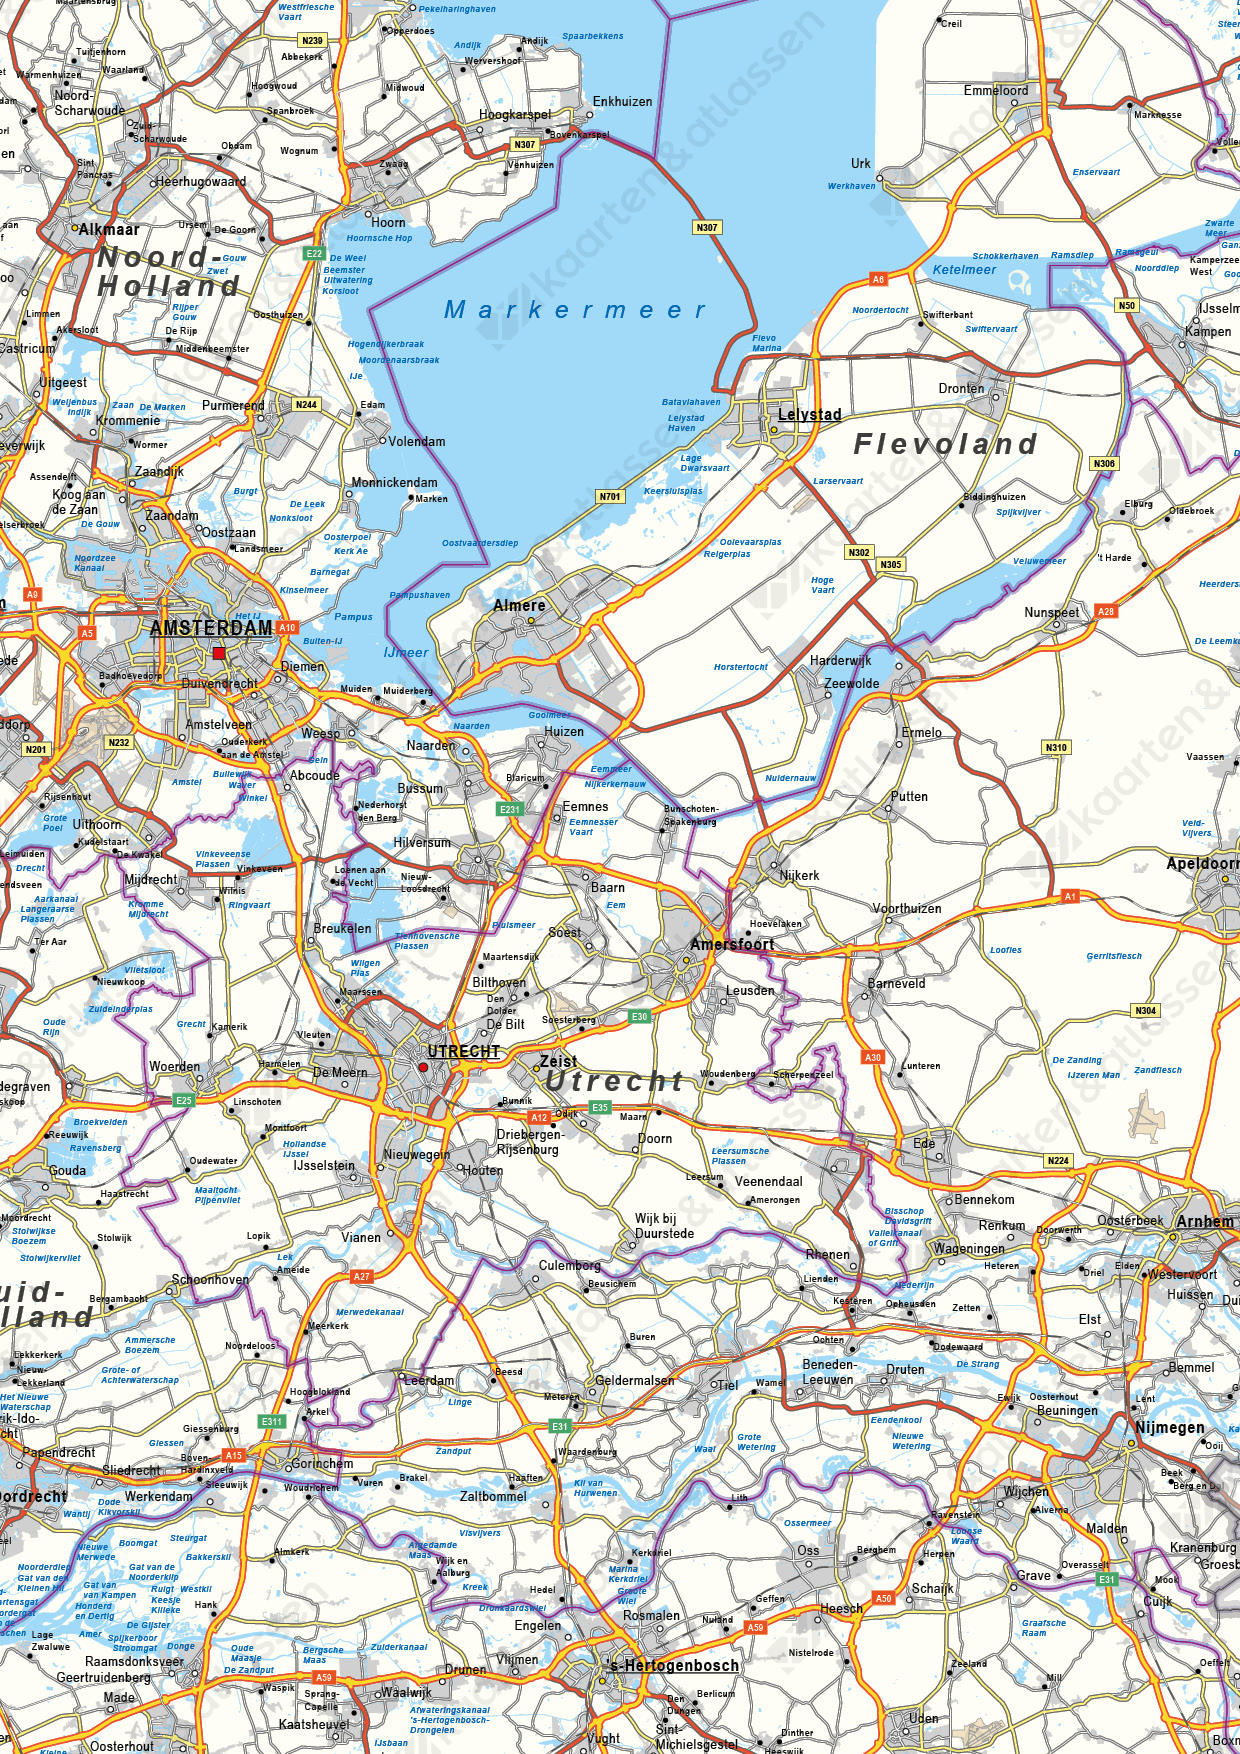 Wegenkaart Nederland 